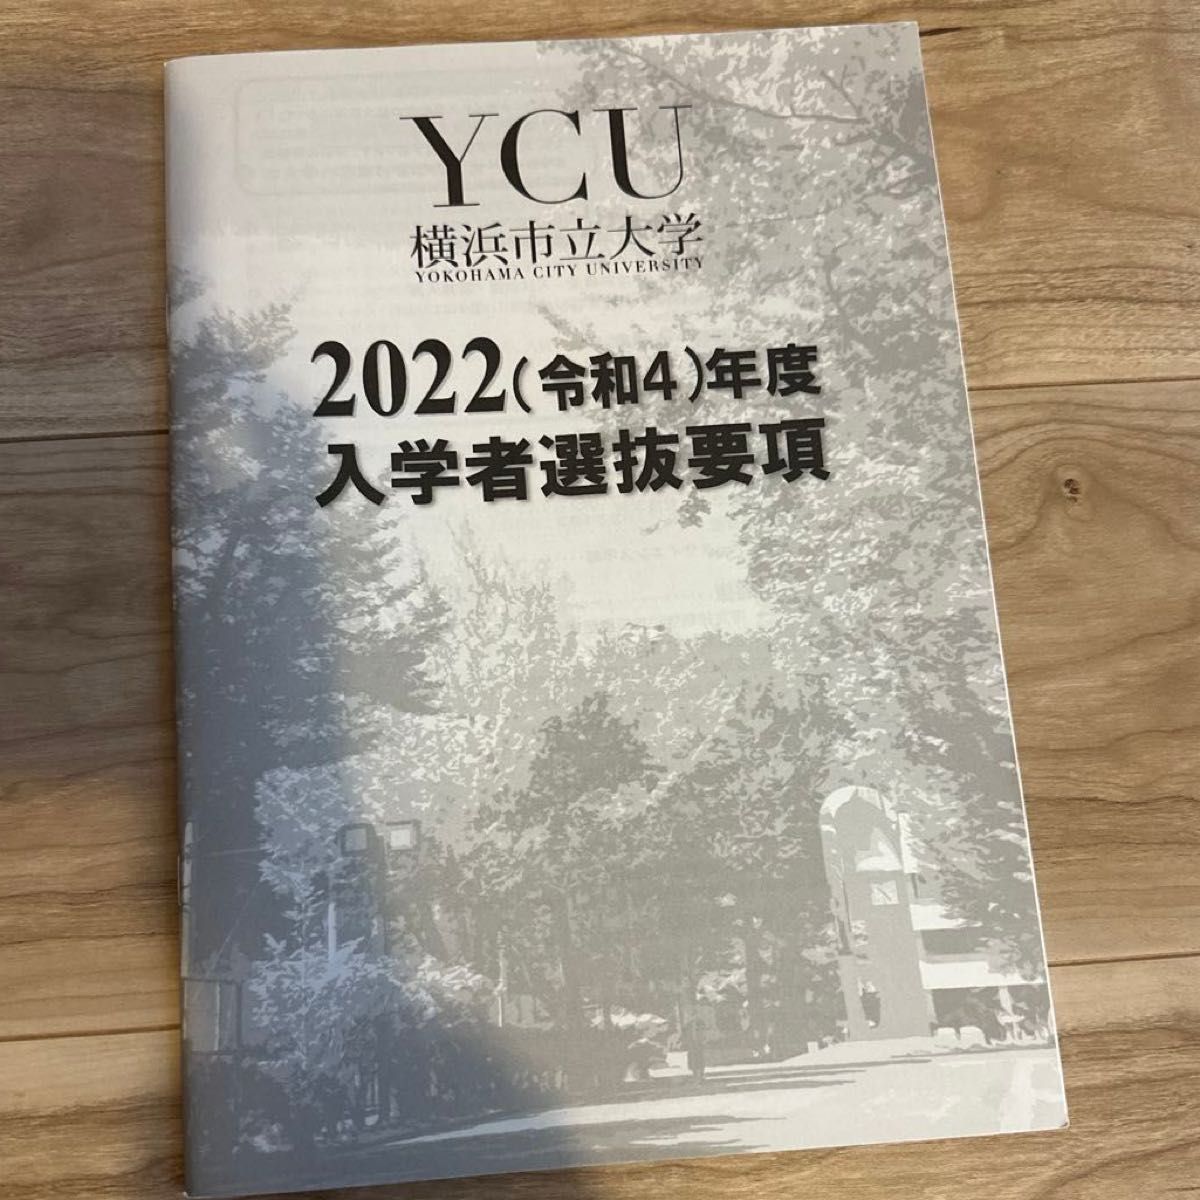 横浜市立大学 (医学部 〈医学科〉) (2021年版大学入試シリーズ)及びパンフレットその他入試情報